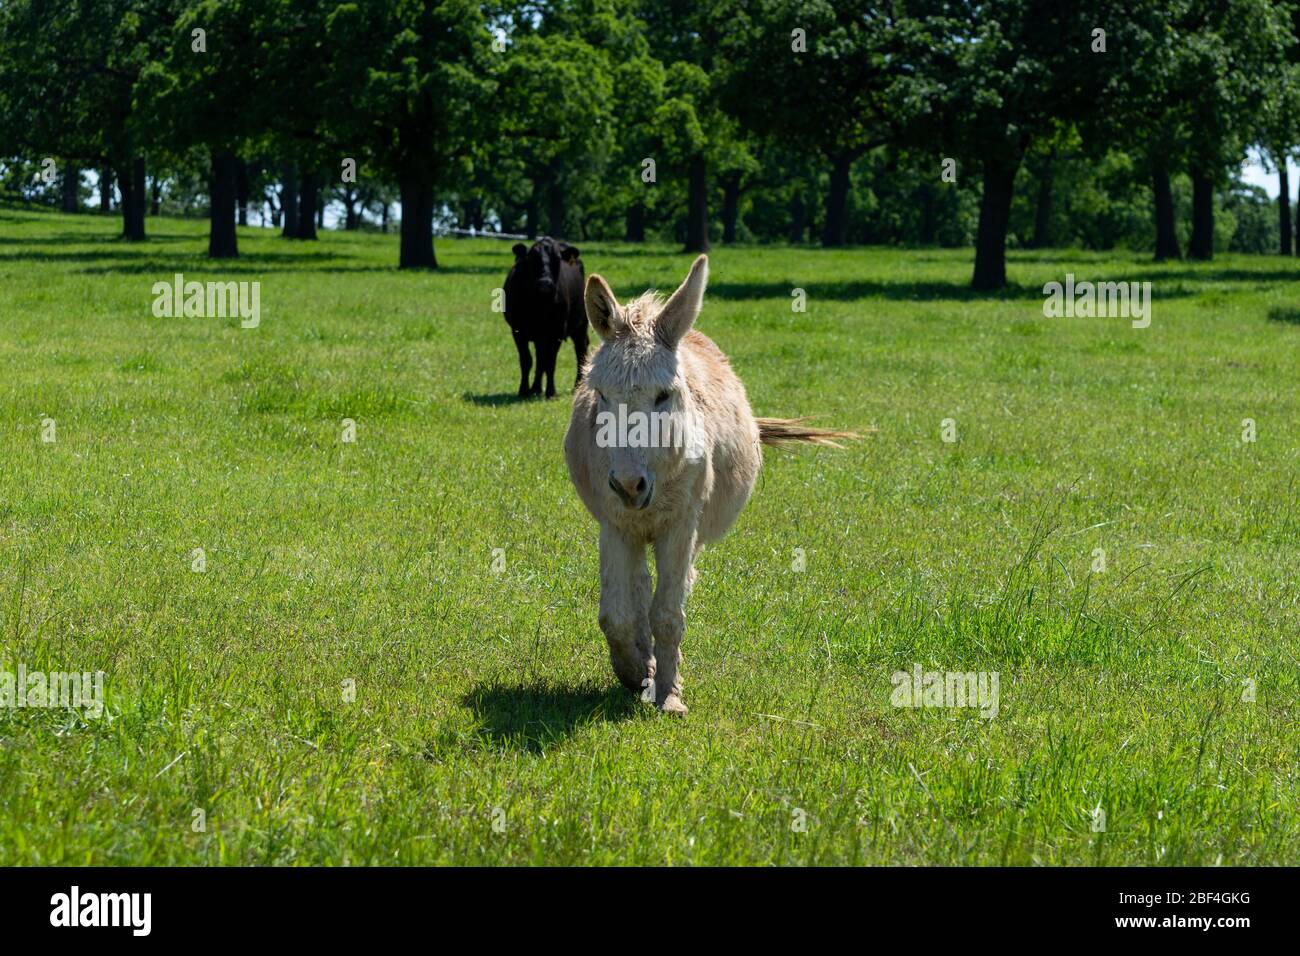 Un joli âne brun clair et brun brun clair à travers un pré de ranch plein d'herbe verte avec ses longues oreilles perchées et quelques arbres et une vache dans le dos Banque D'Images